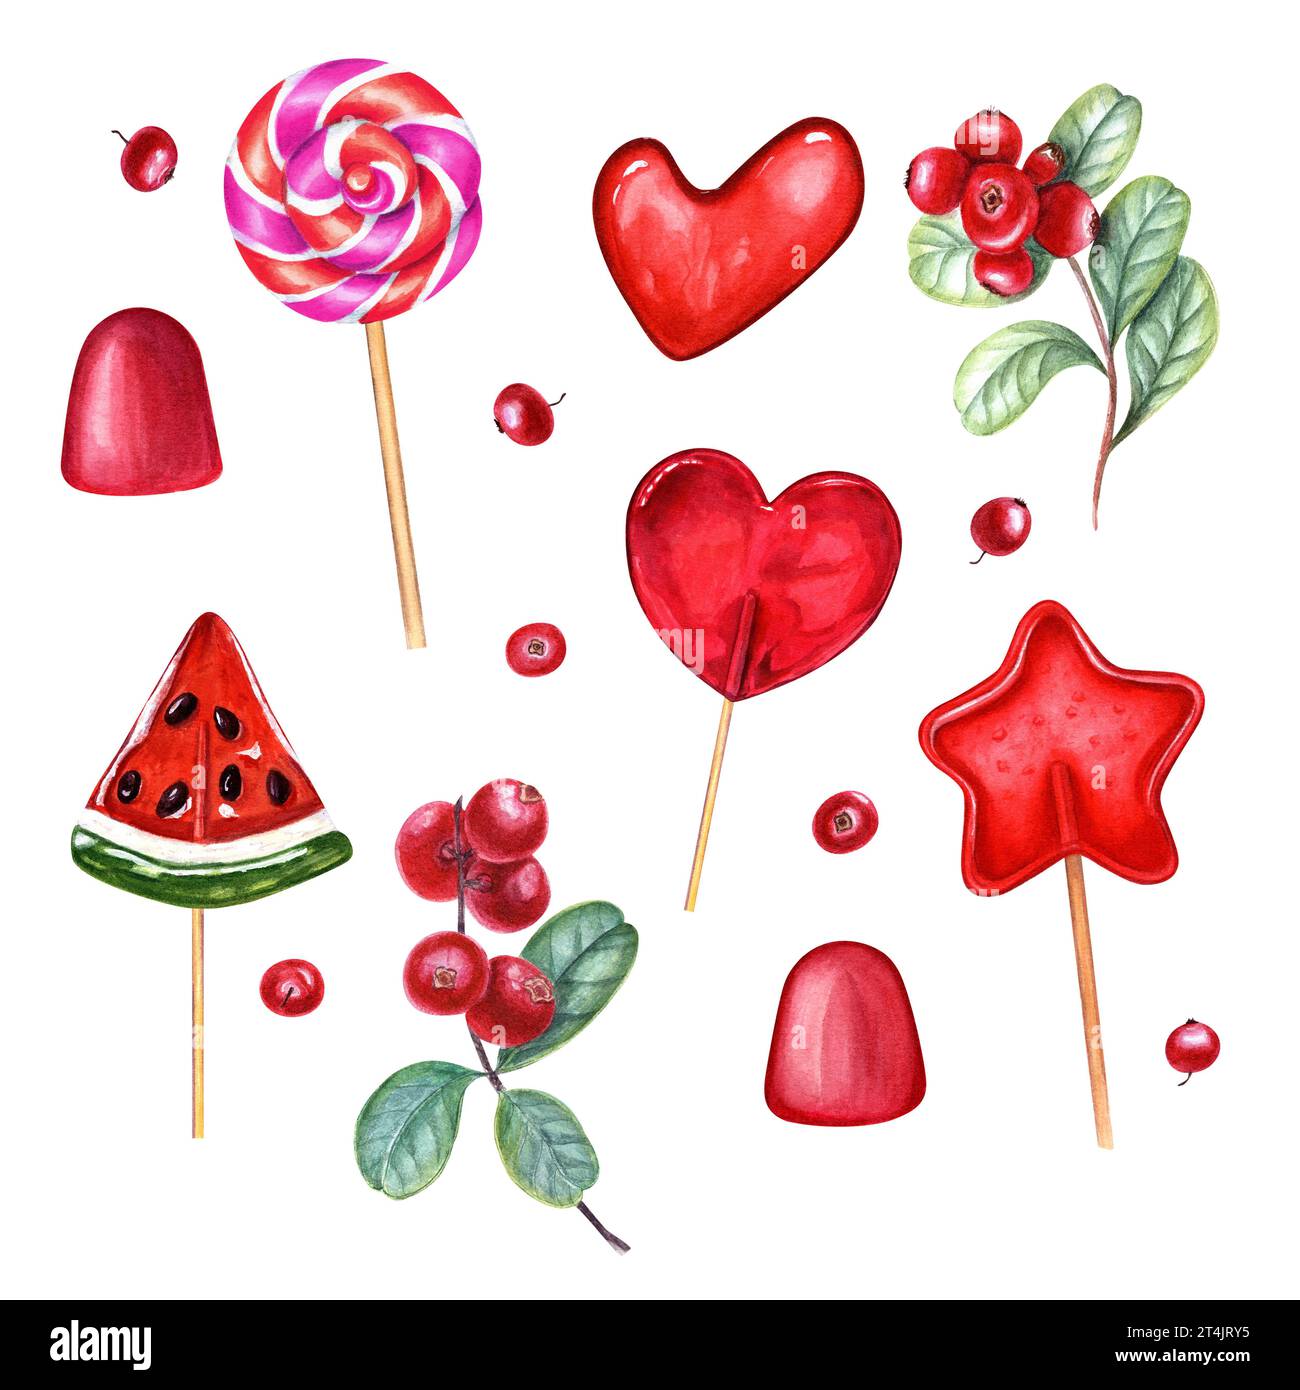 Watermelon Heart Lollipop Candy